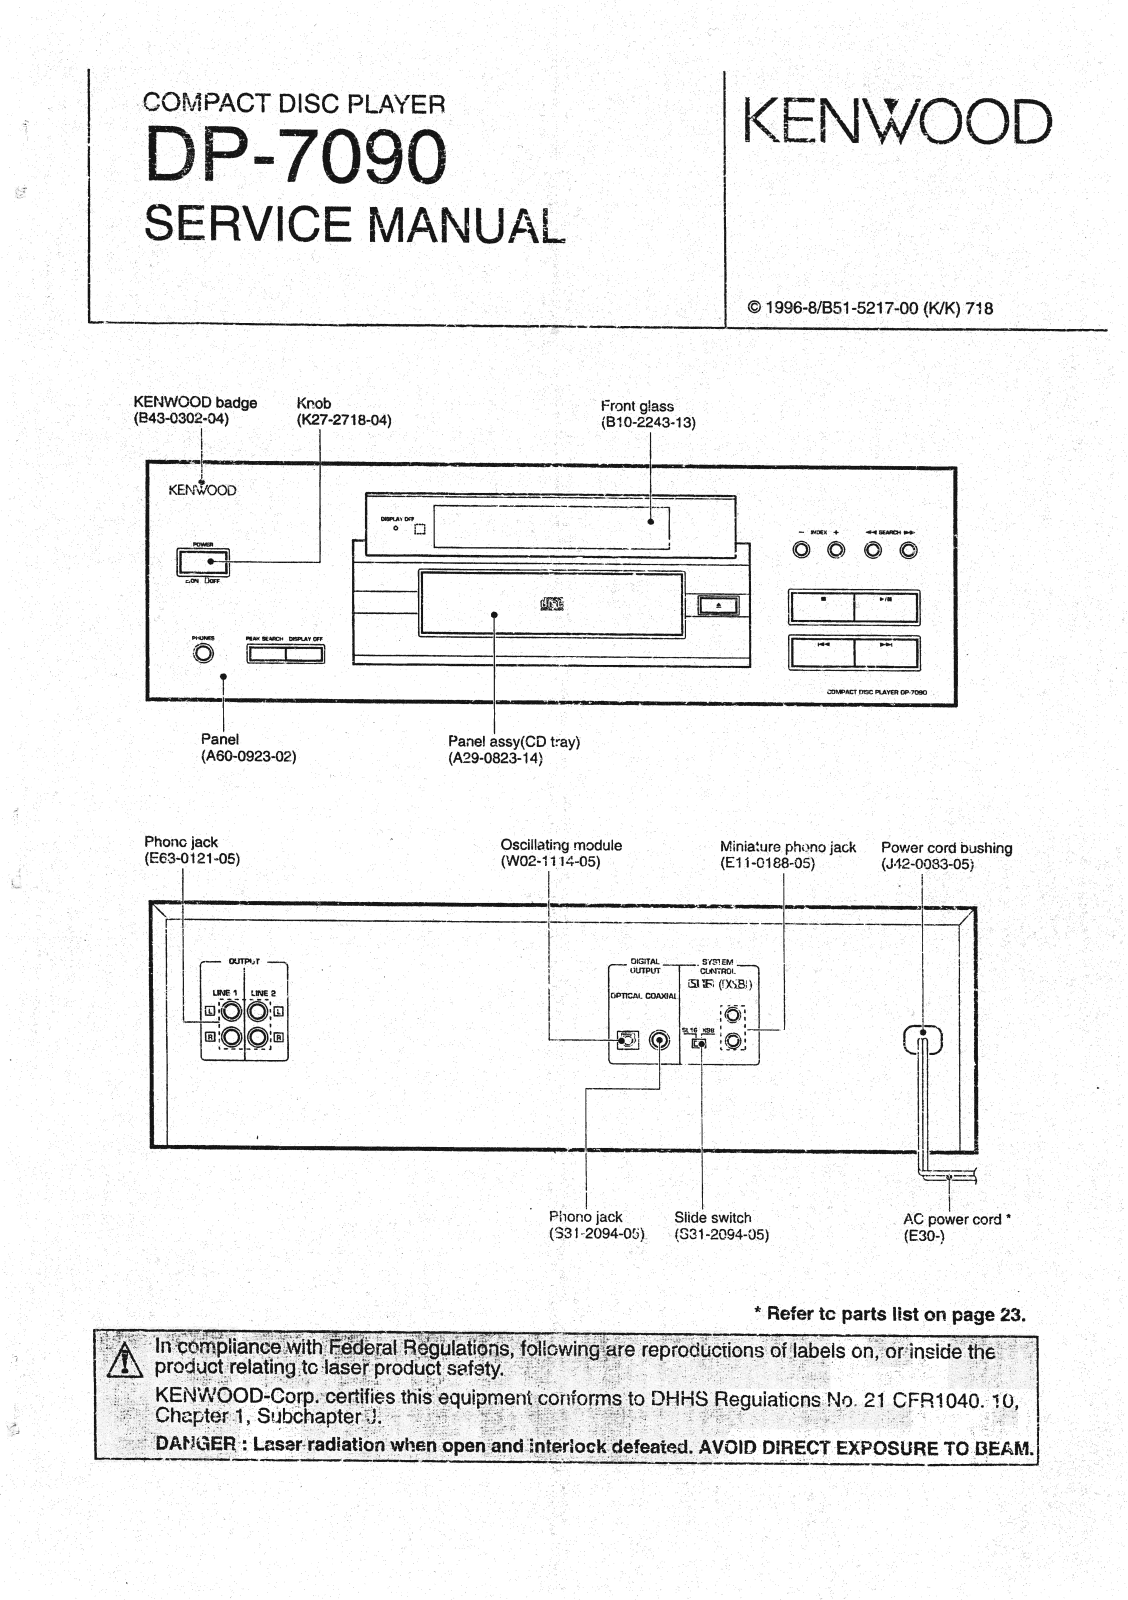 Kenwood DP-7090 Service Manual